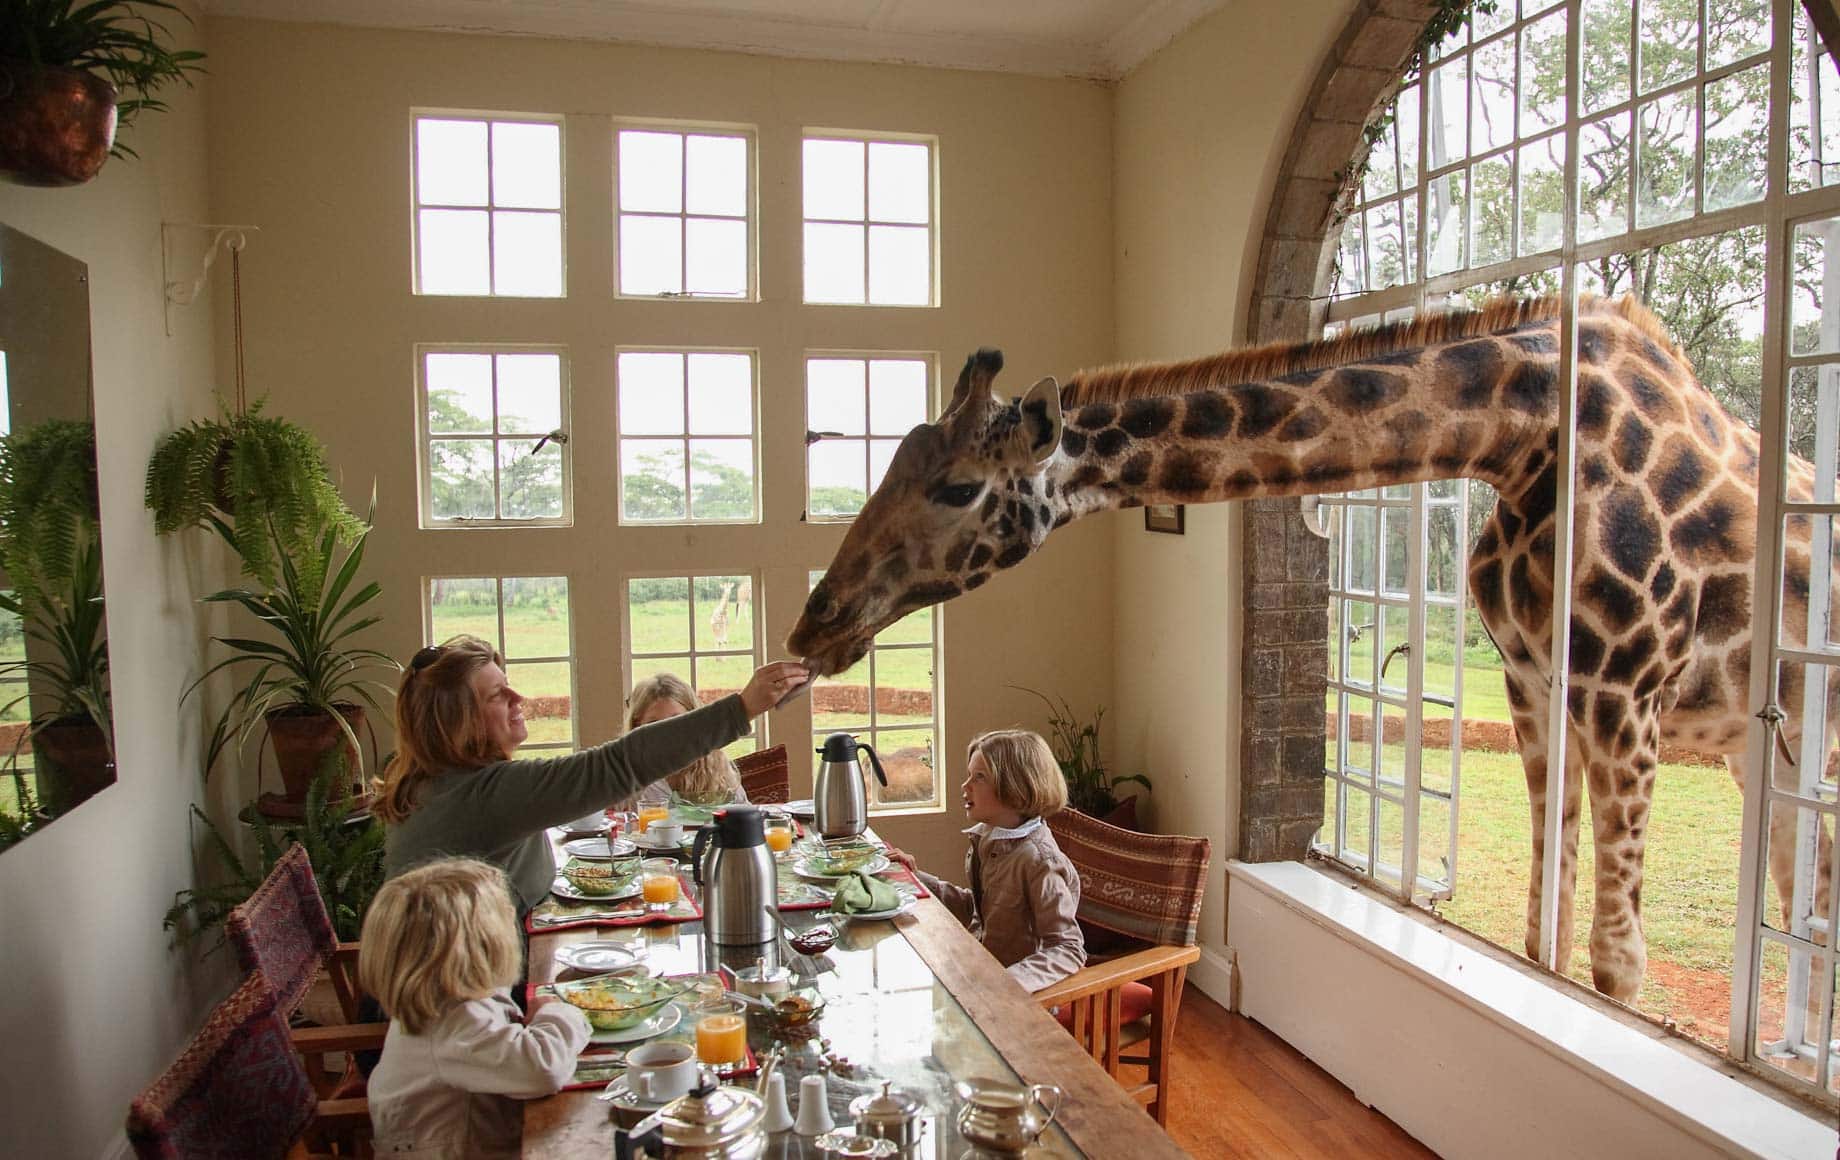 Family Safari at the Giraffe Hotel